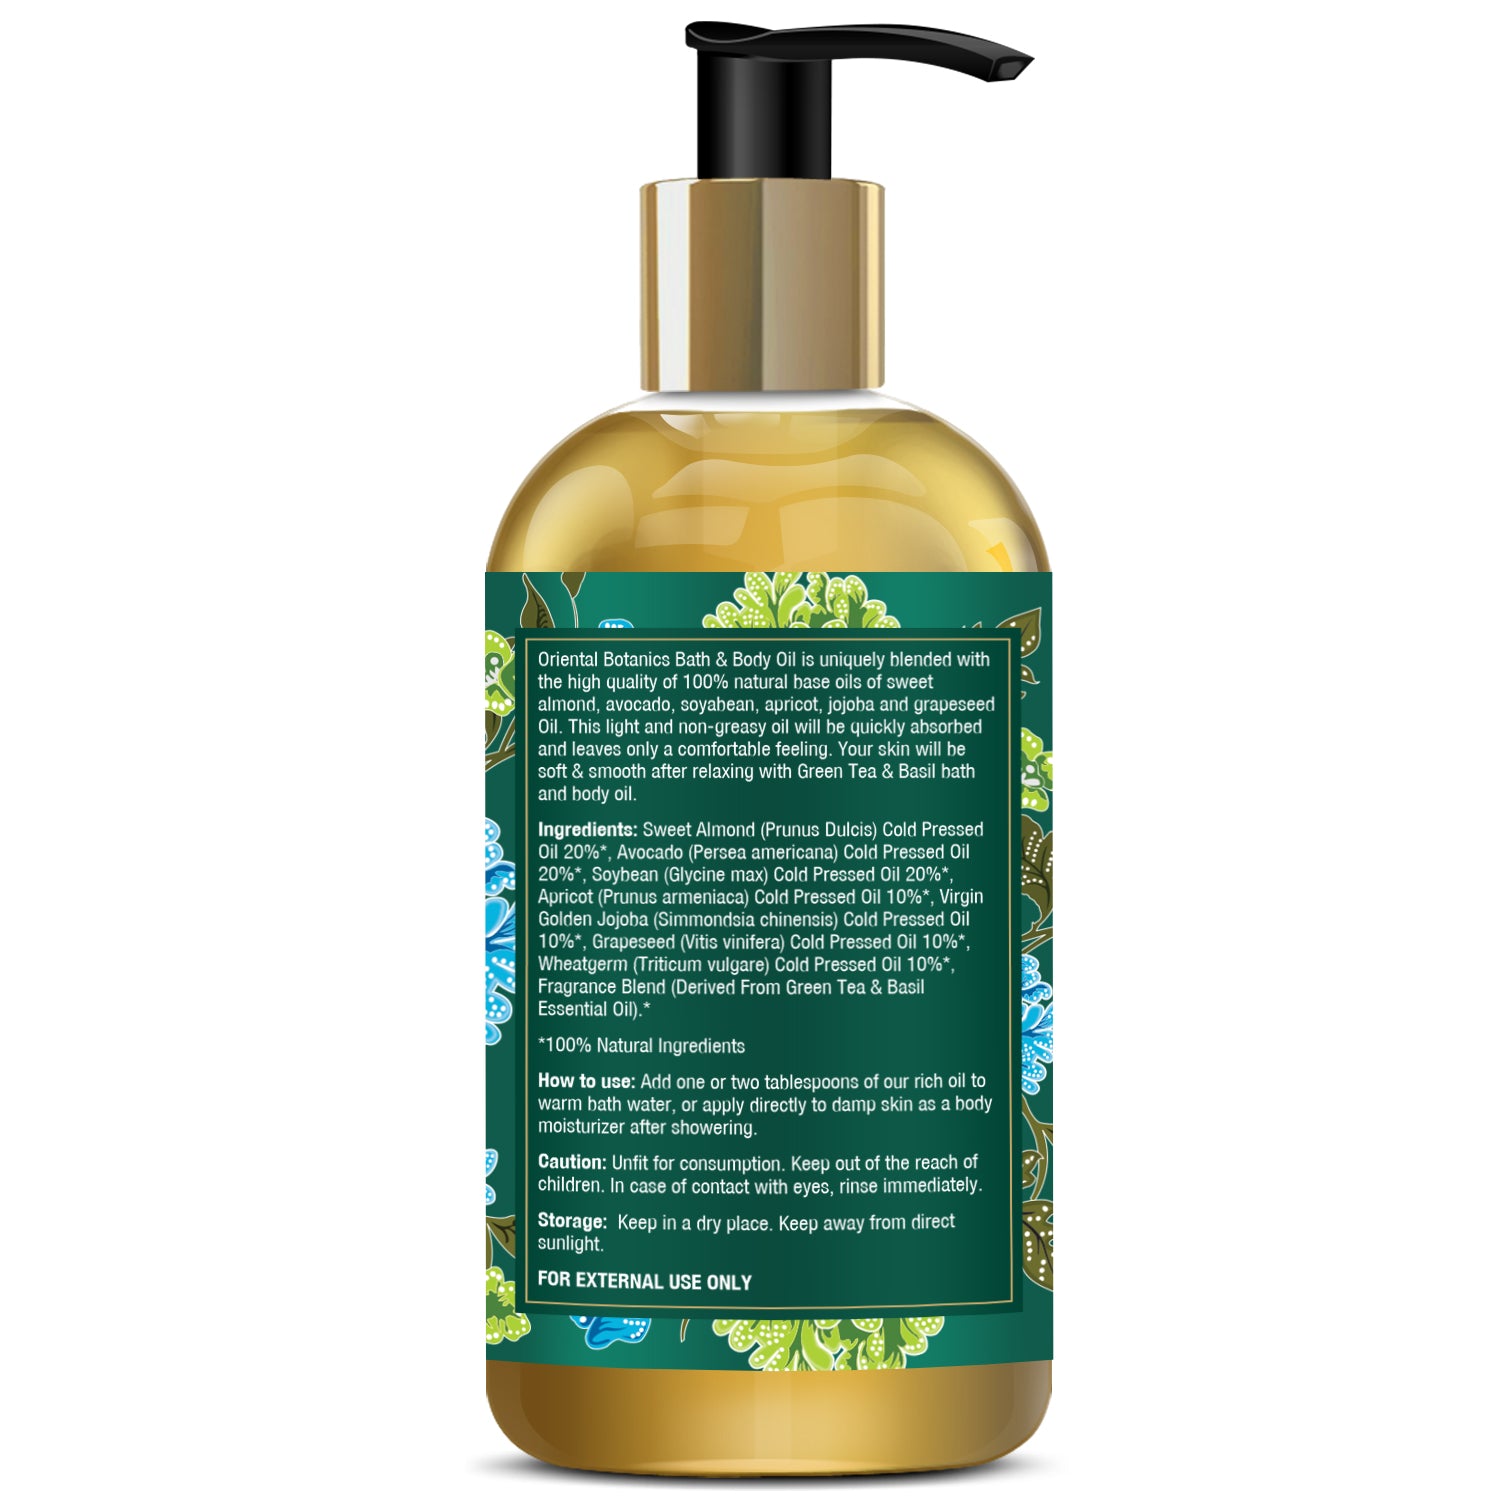 Oriental Botanics Bath & Body Oil (Green Tea & Basil) - No Mineral Oil, 200 ml (ORBOT08)